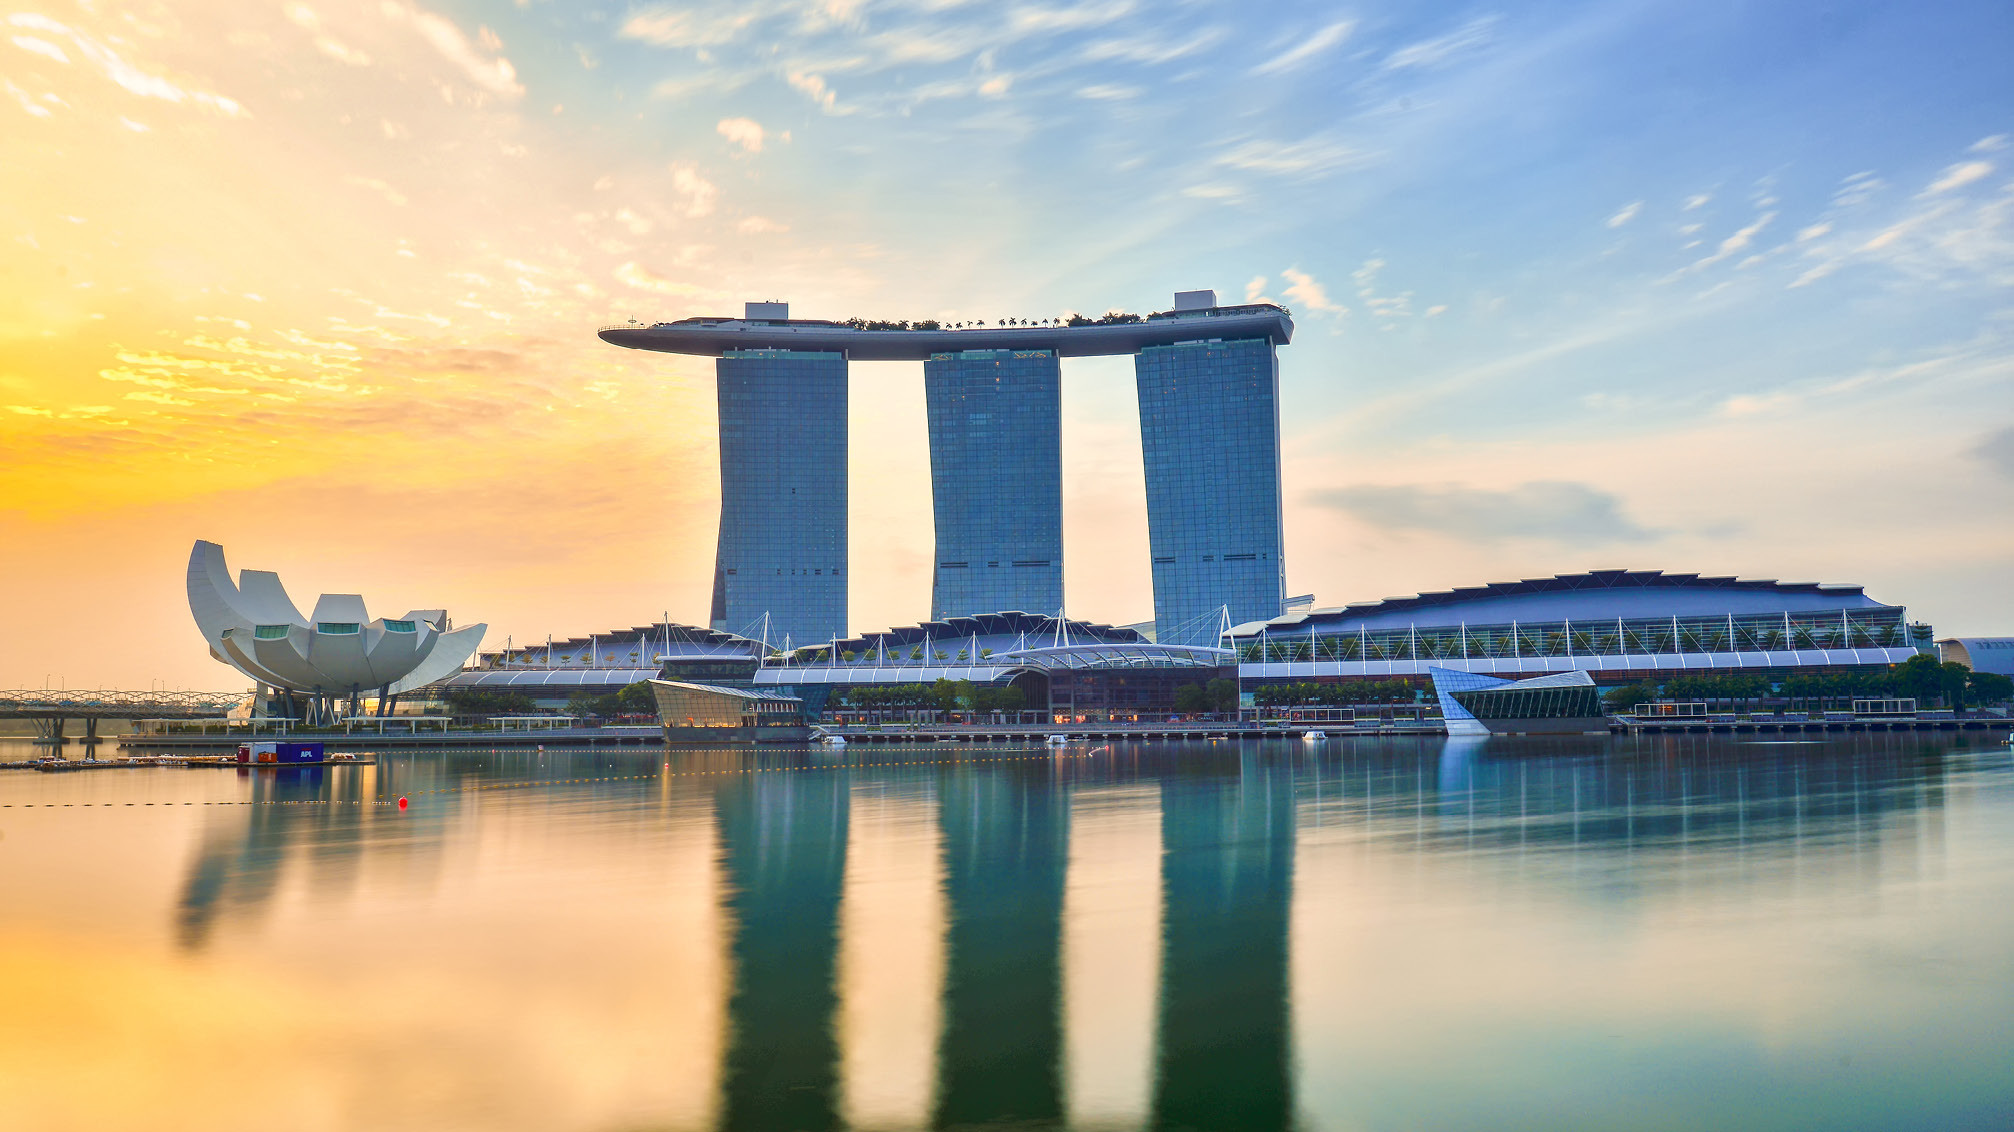 PARKROYAL COLLECTION Marina Bay, Singapore ₹ 2,343. Singapore Hotel Deals &  Reviews - KAYAK